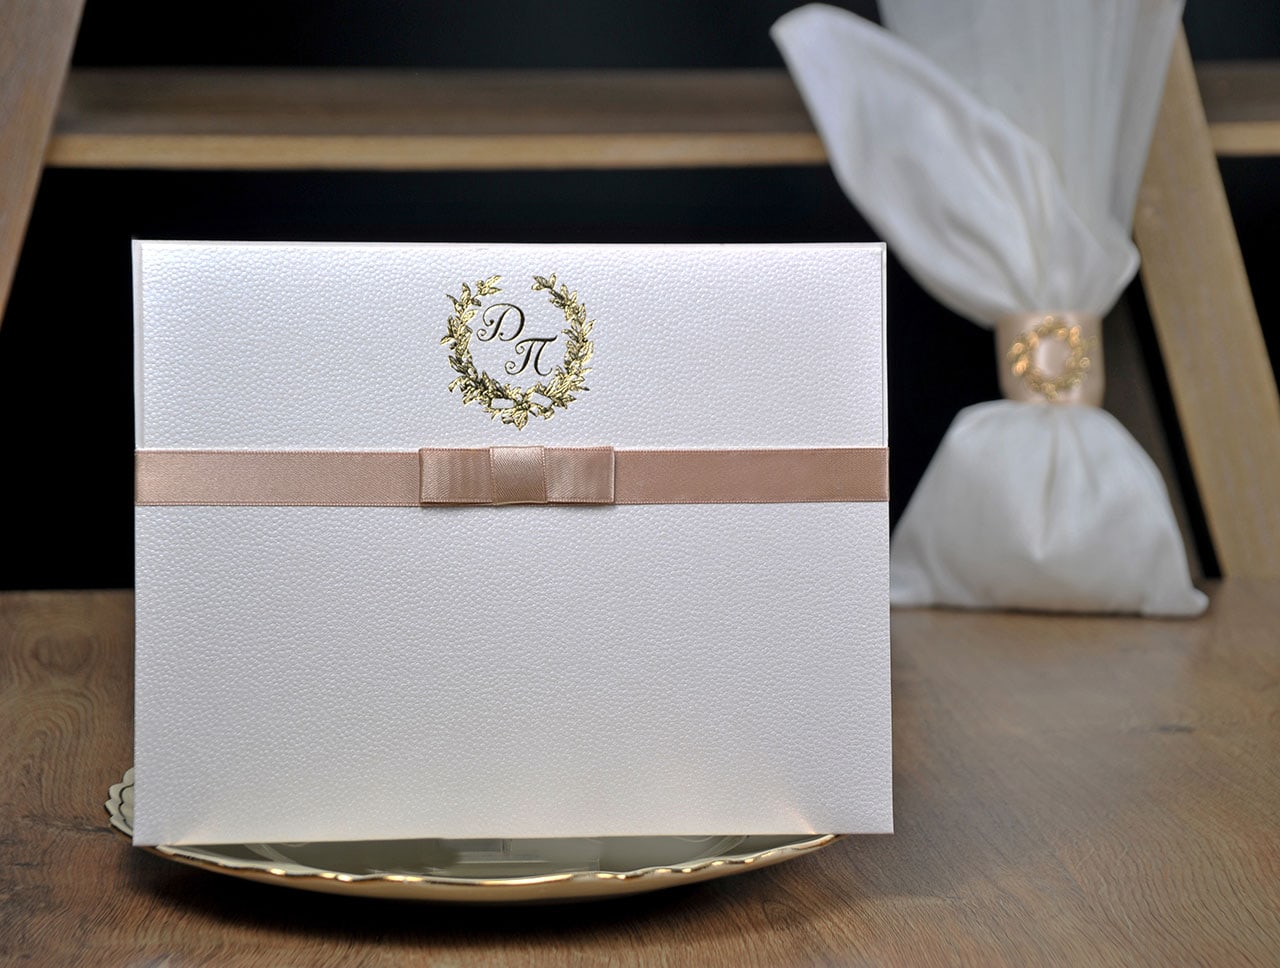 Προσκλητήριο Γάμου με αρωματικό χαρτί και εκτύπωση χρυσοτυπίας - μπομπονιέρα πουγκί με αντικέιμενο ίδιο σχέδιο με το προσκλητήριο